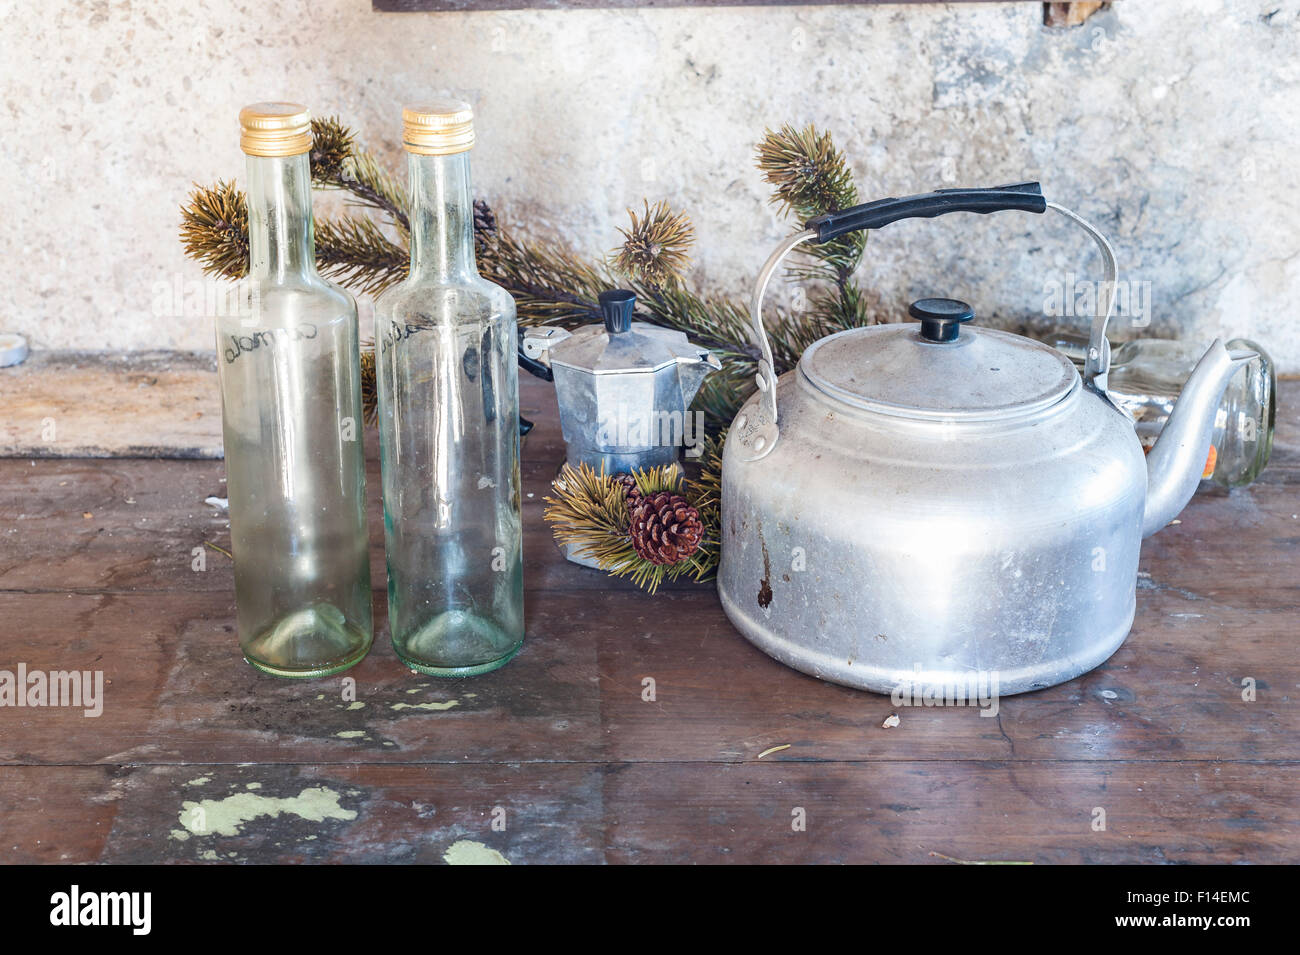 Vieux objets sur une table de cuisine : électrique, cafetière et deux bouteilles Banque D'Images